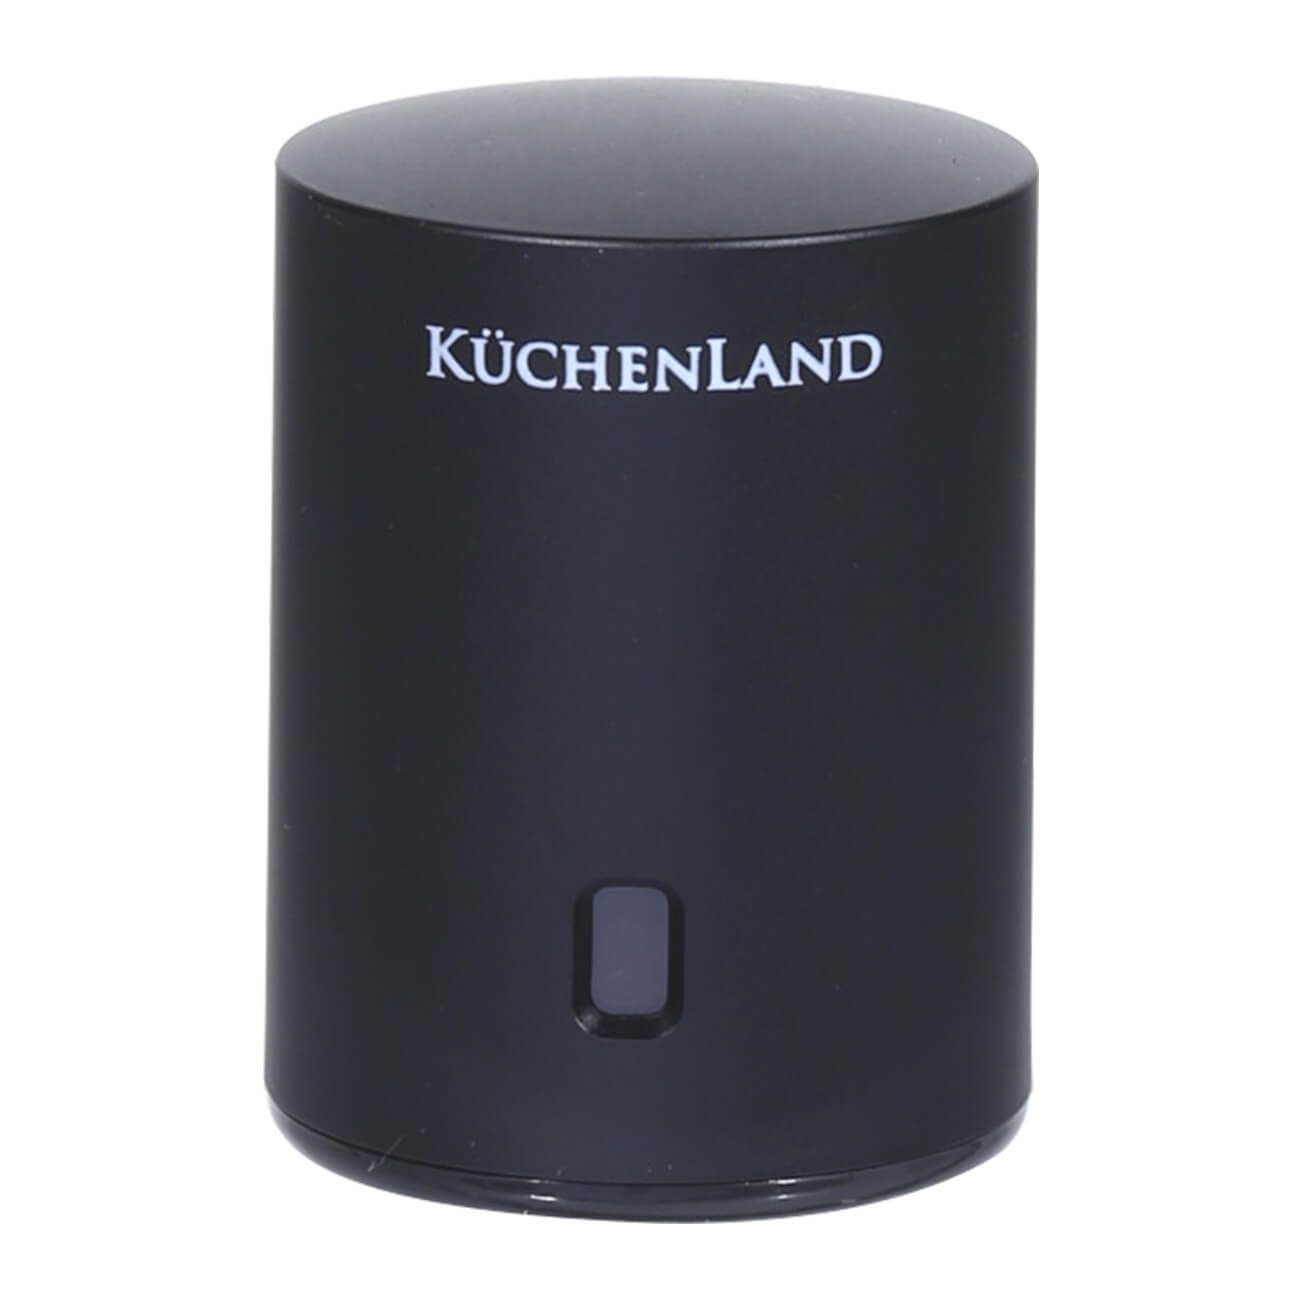 Kuchenland Пробка для винной бутылки, 6 см, вакуумная, с окном установки даты, пластик, черная, Bar